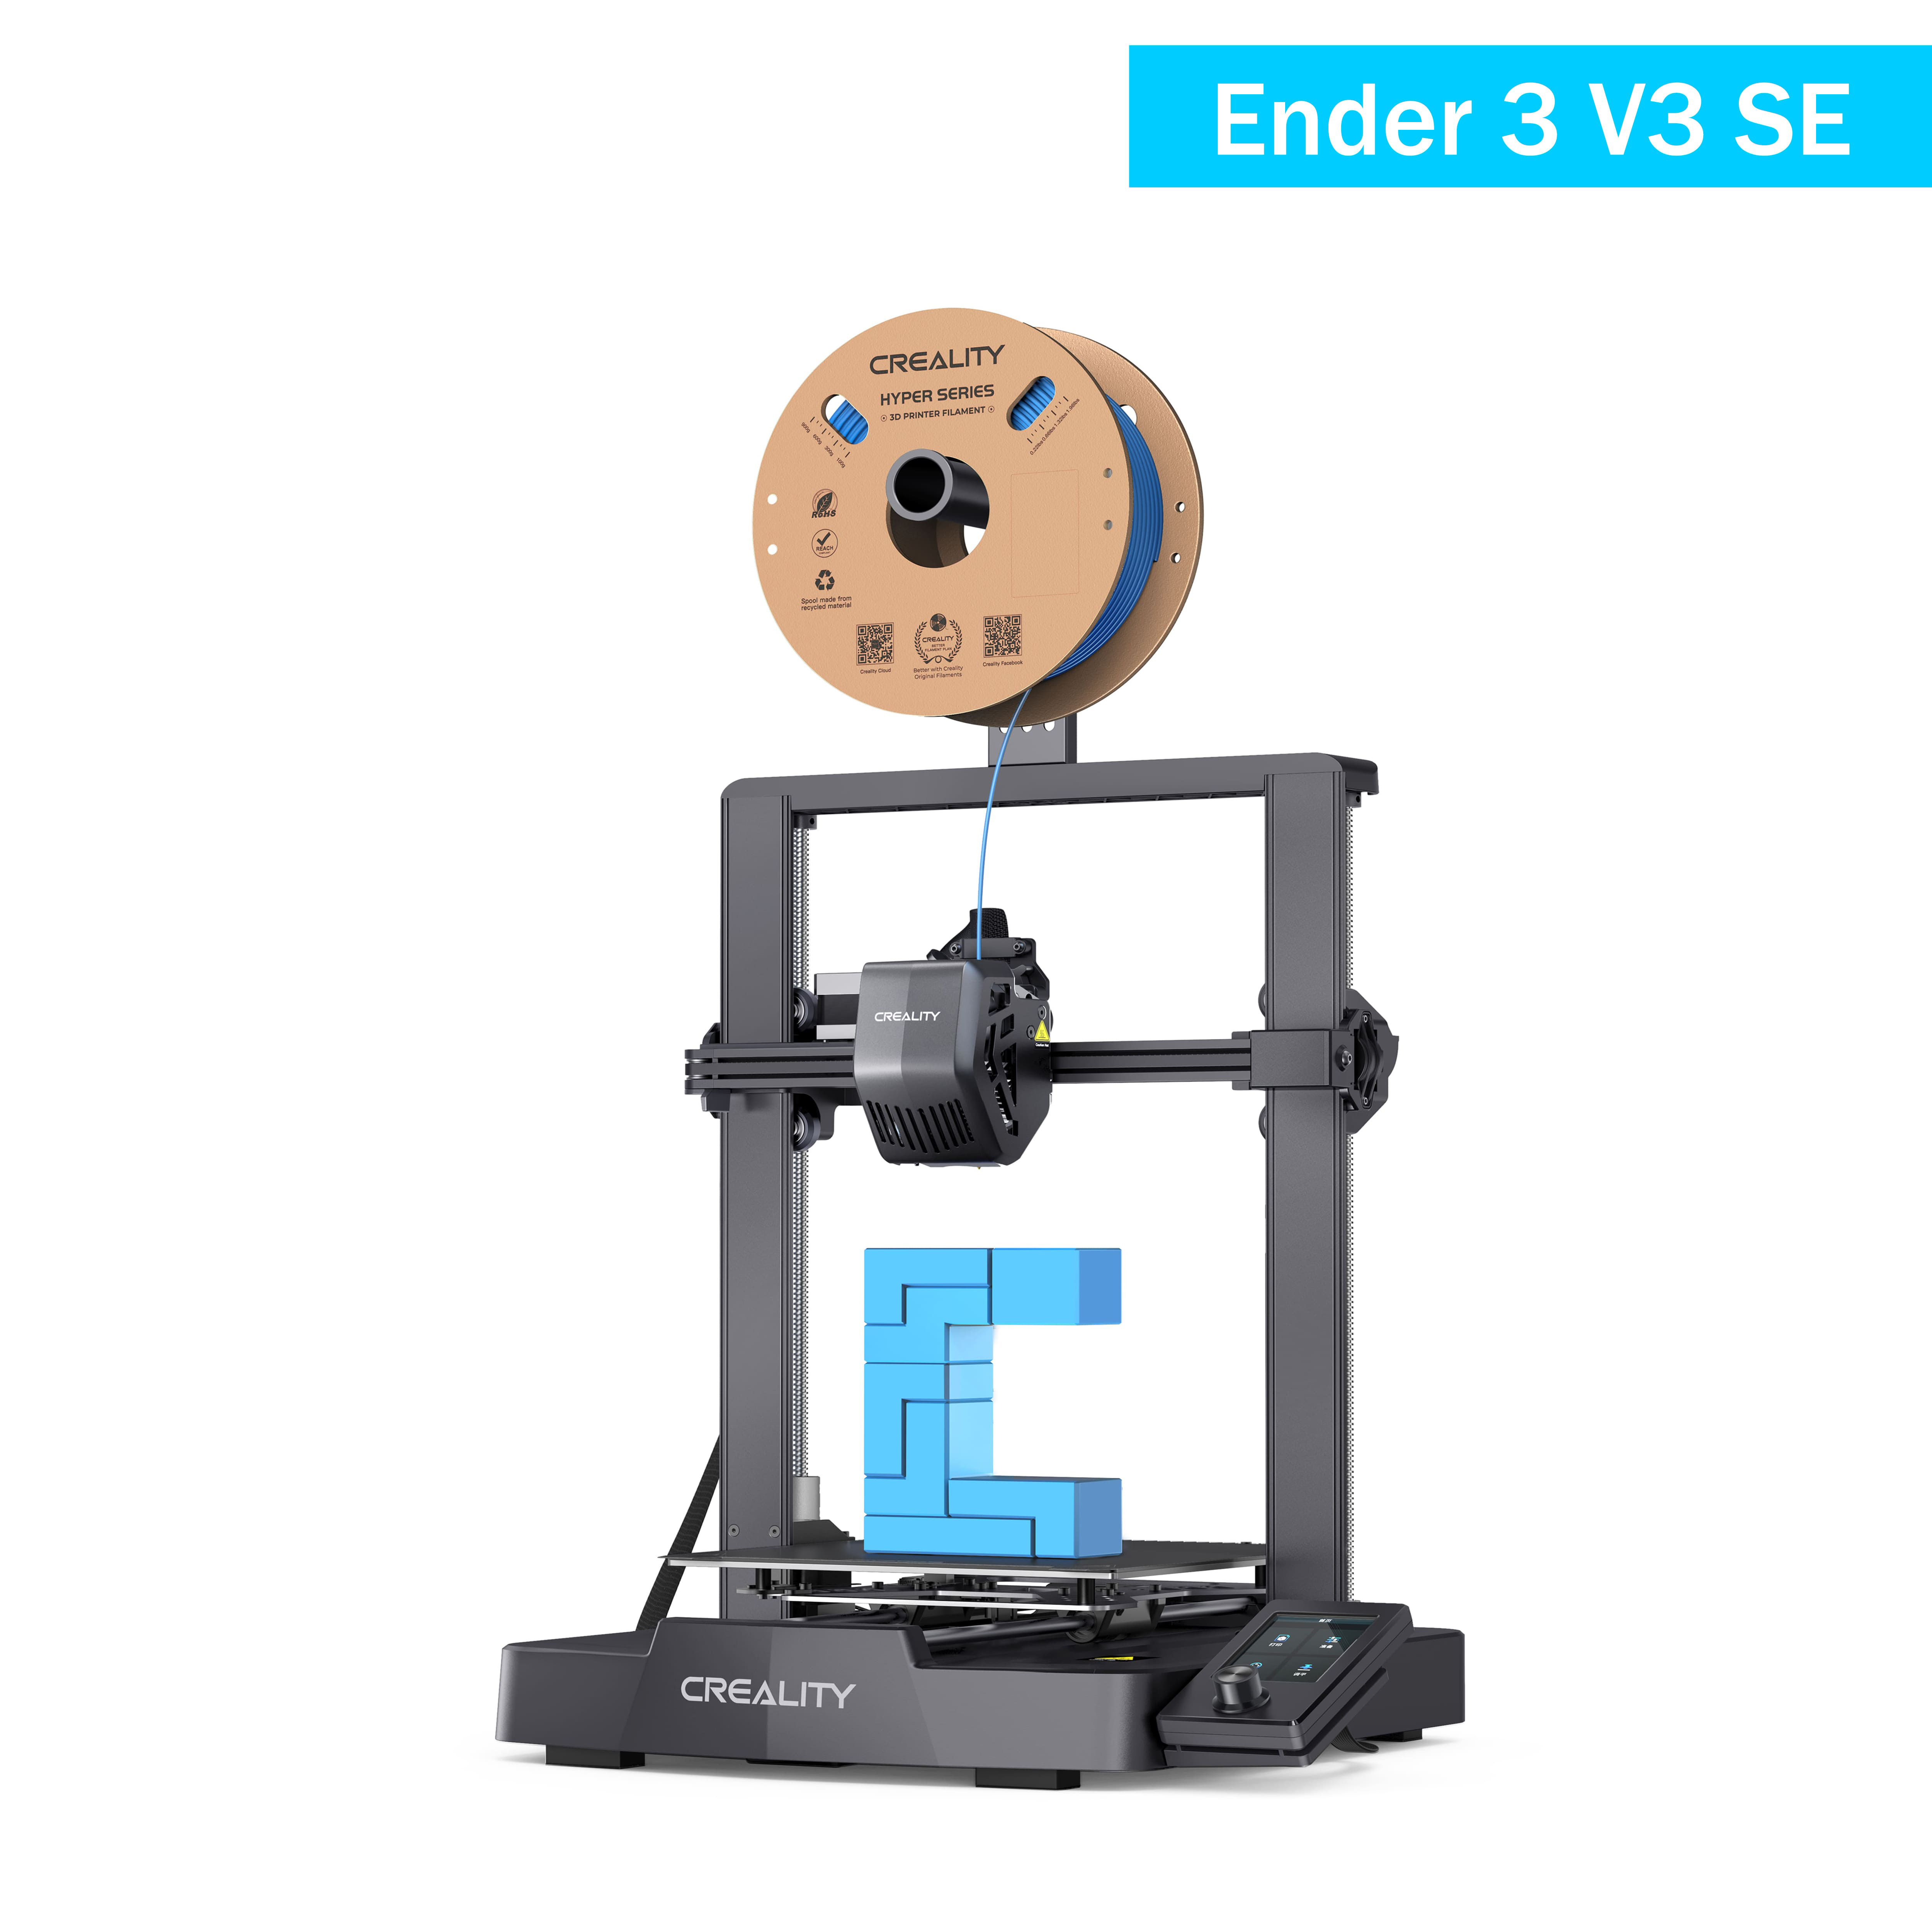 Buy 3KG Hyper High Speed Printing Filament, Get Free 2KG Ender Pla Bundles